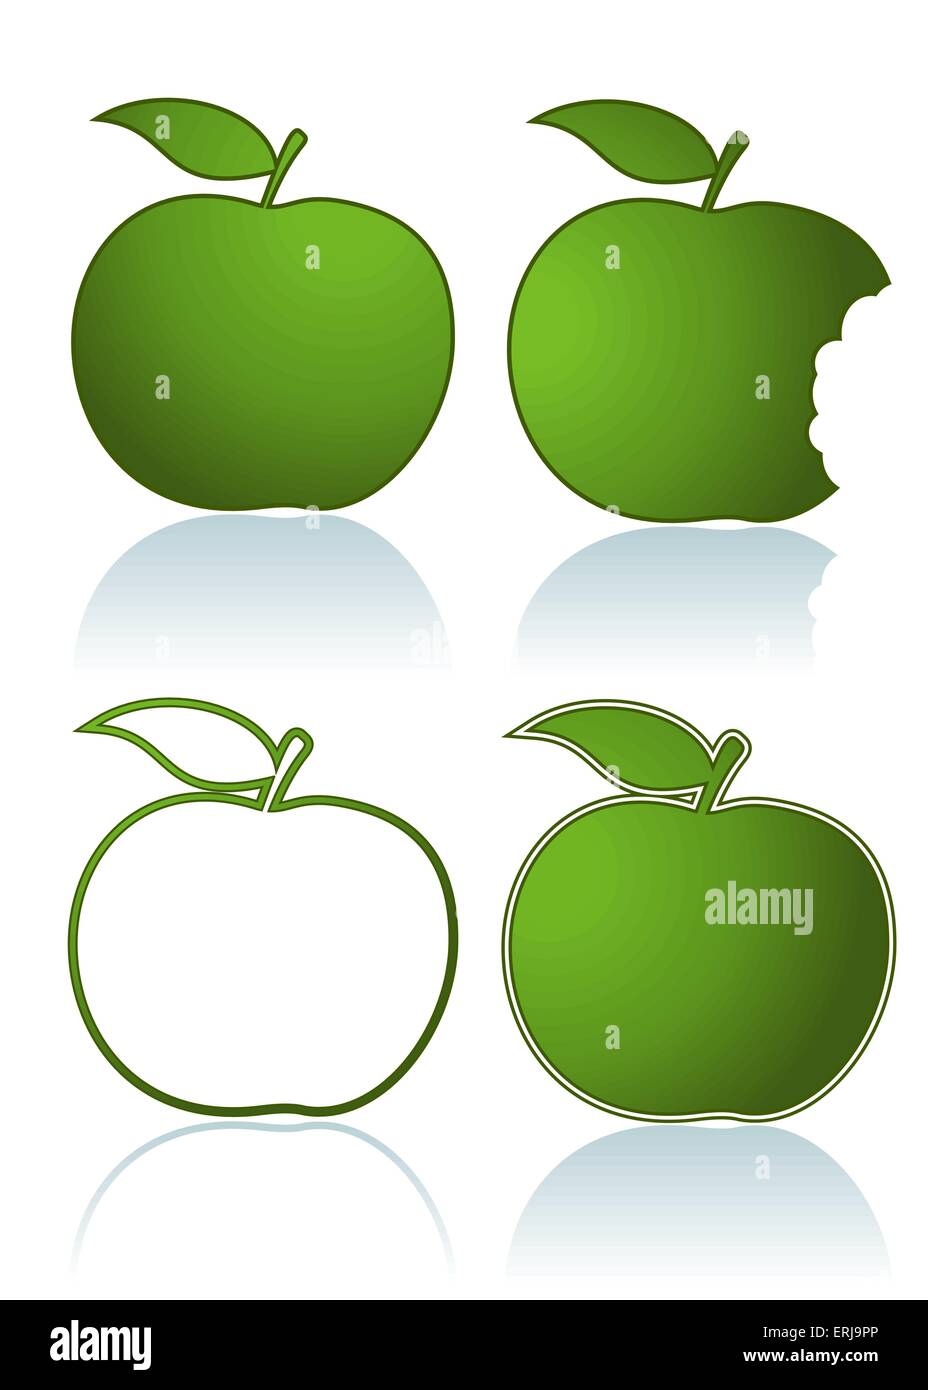 Satz von verschiedenen grünen Äpfeln, isoliert auf weiss Stock Vektor